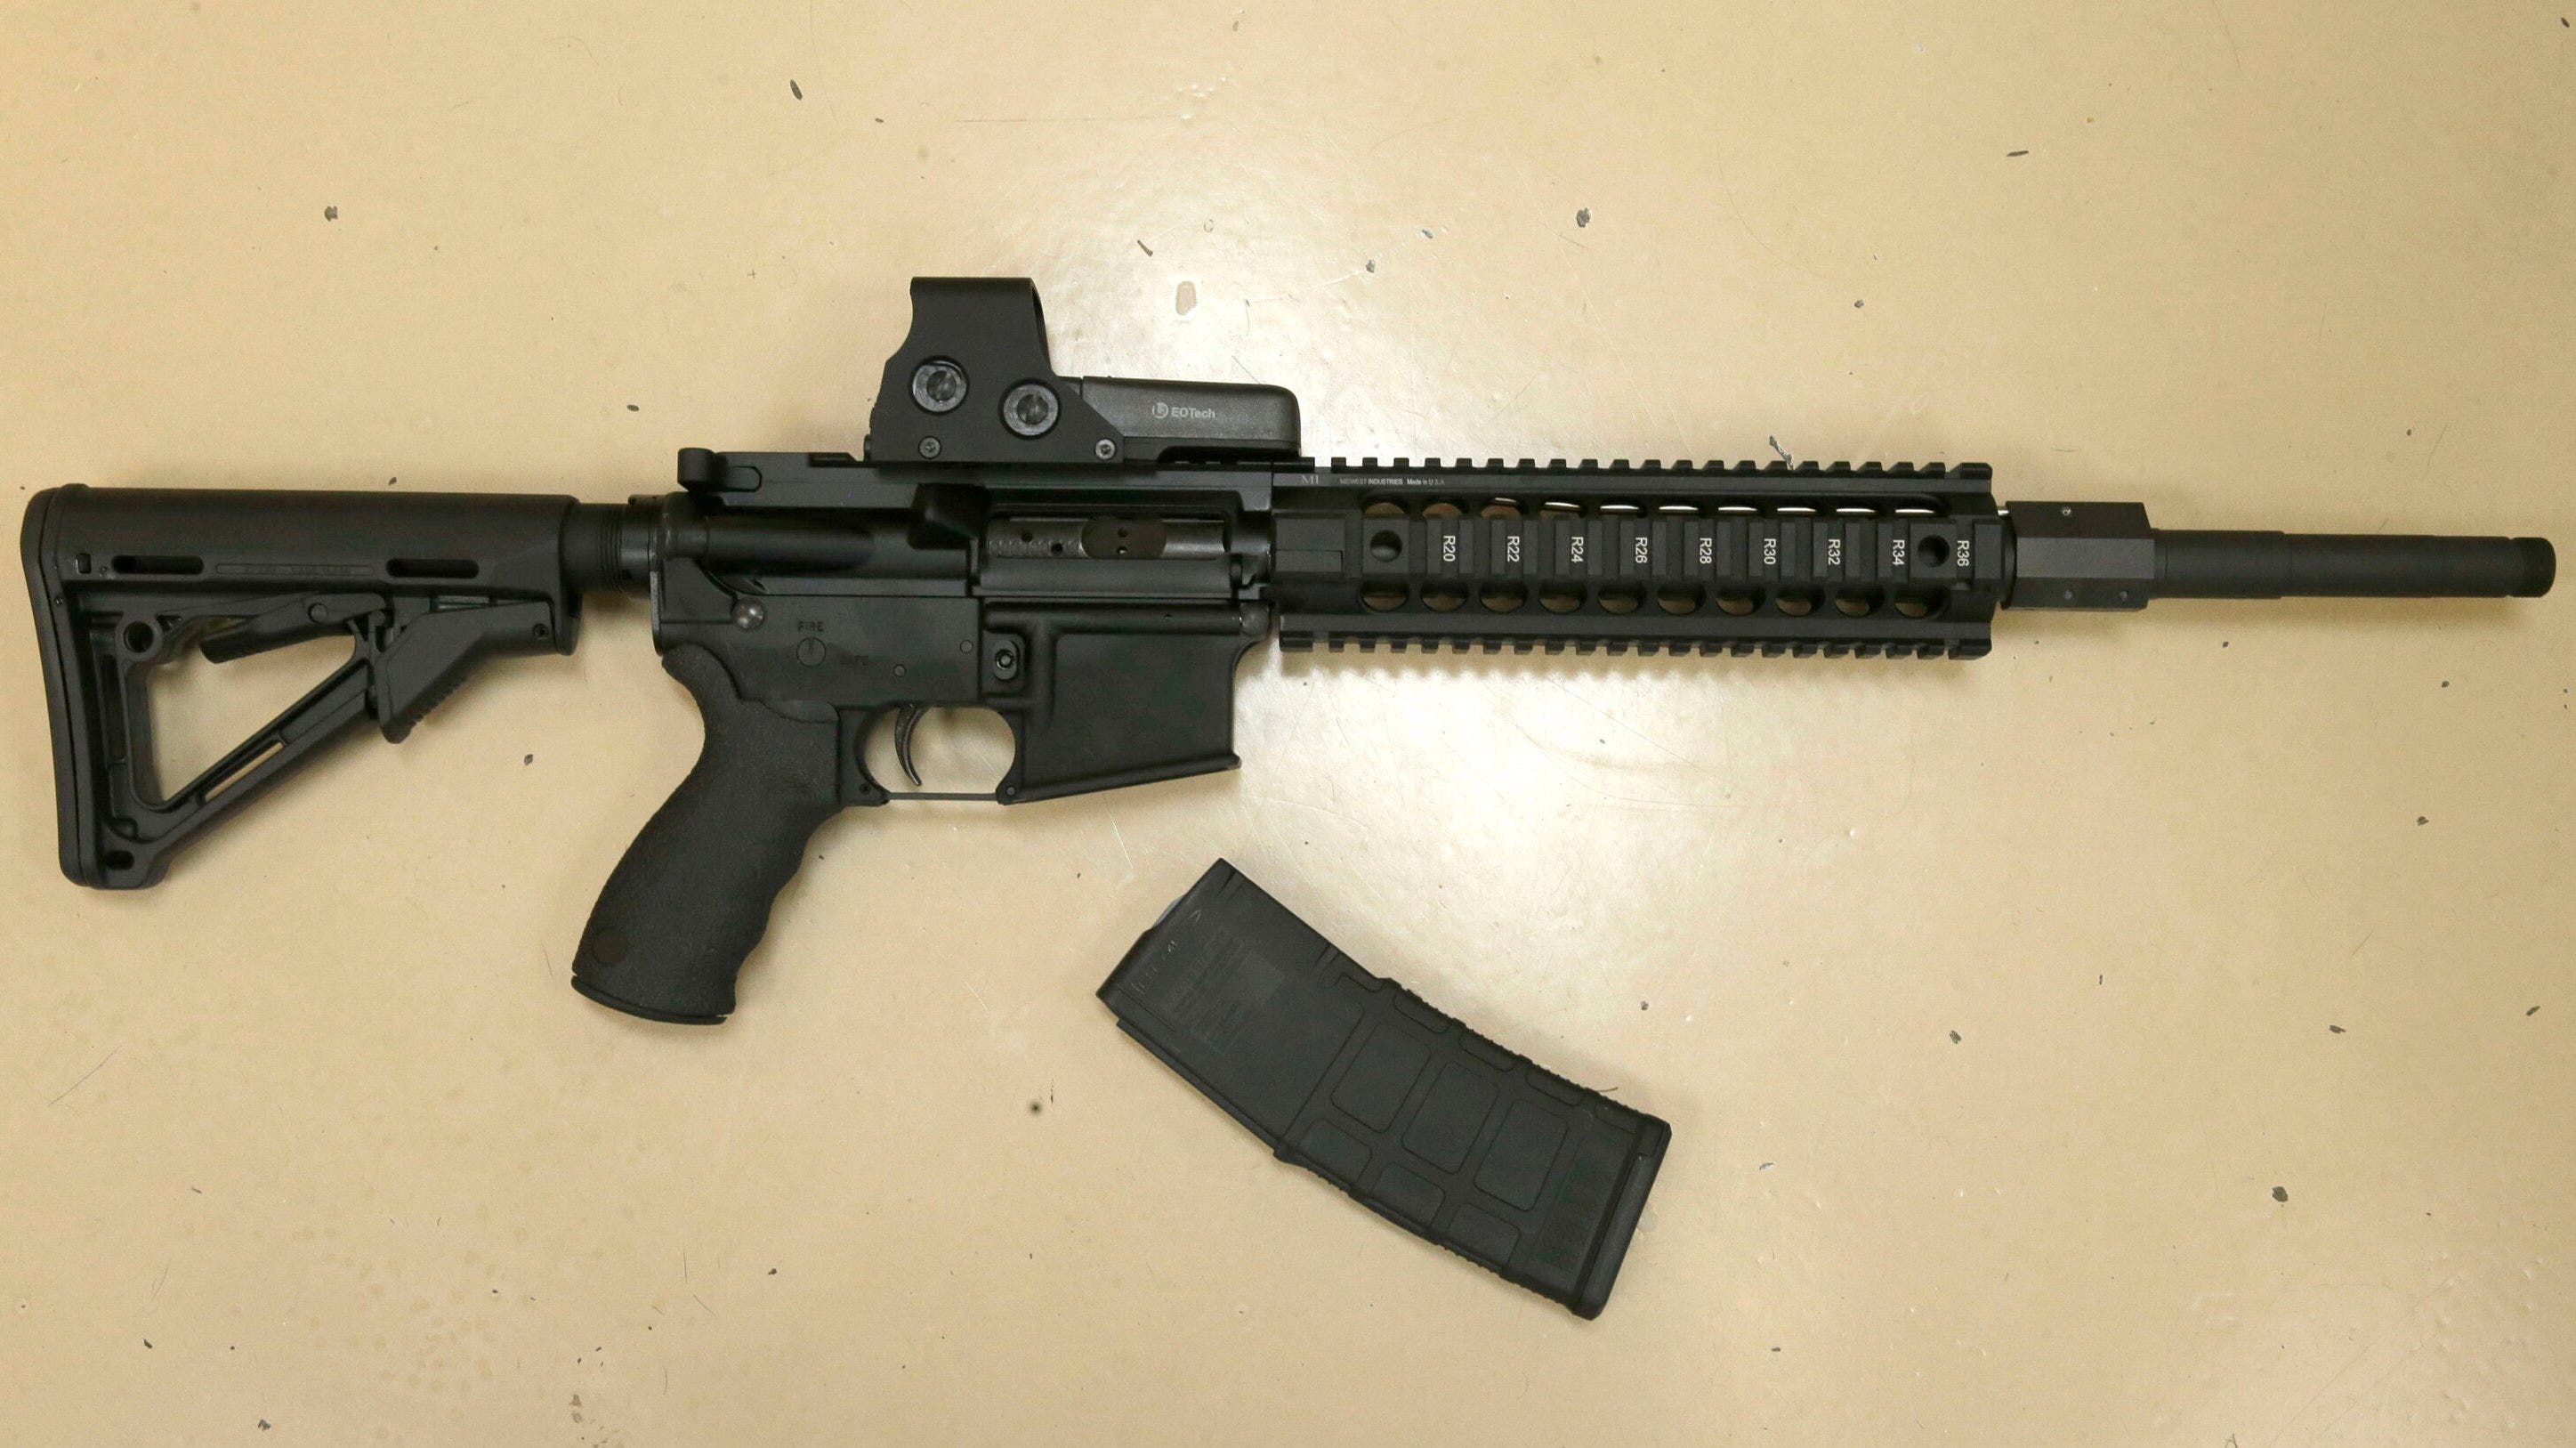 California's liberal Ninth Circuit to tackle gun rights, mull ending high-capacity magazine ban